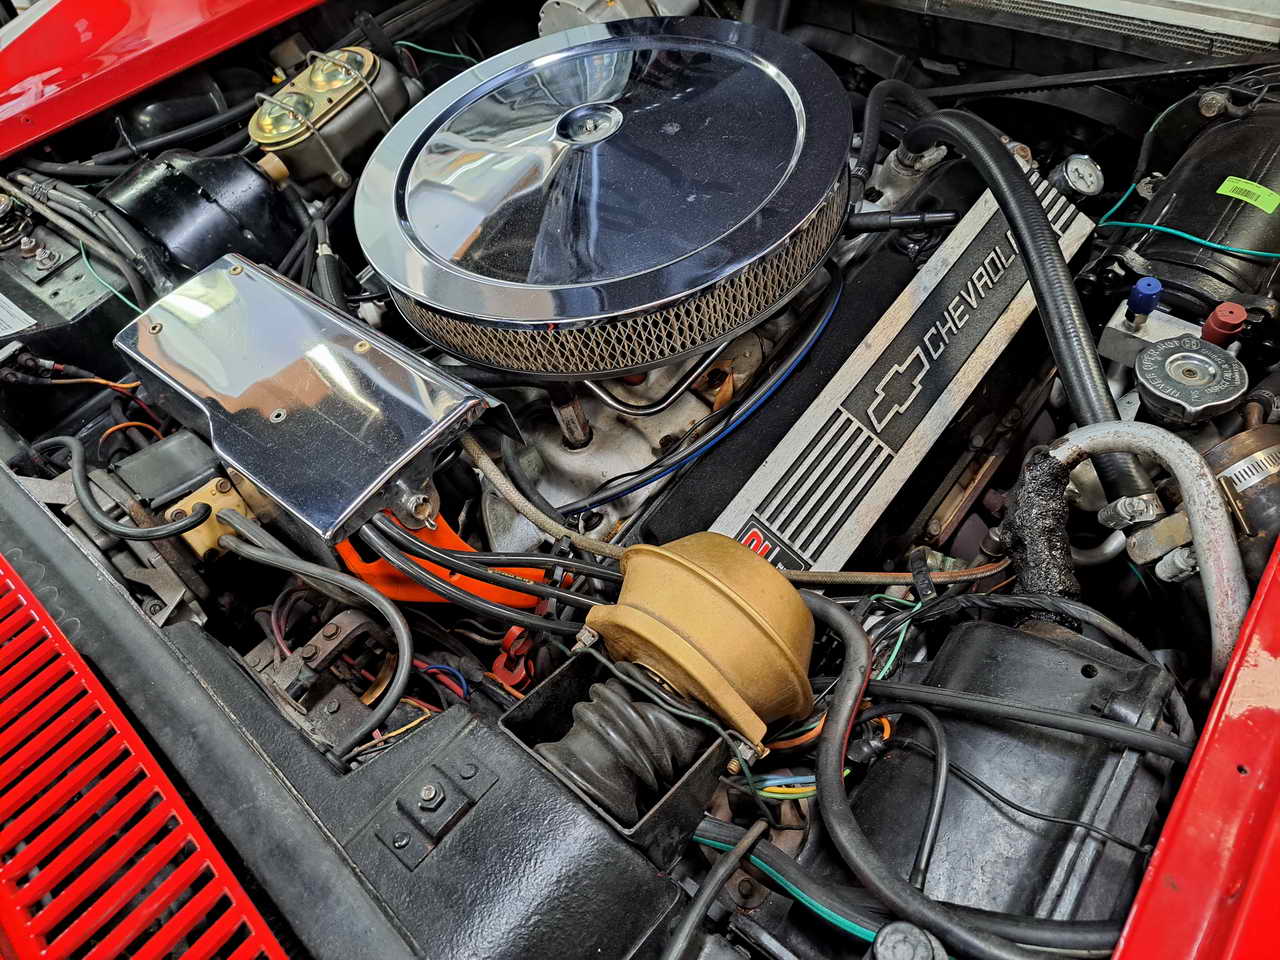 1972 Corvette Coupe Mille Miglia Red